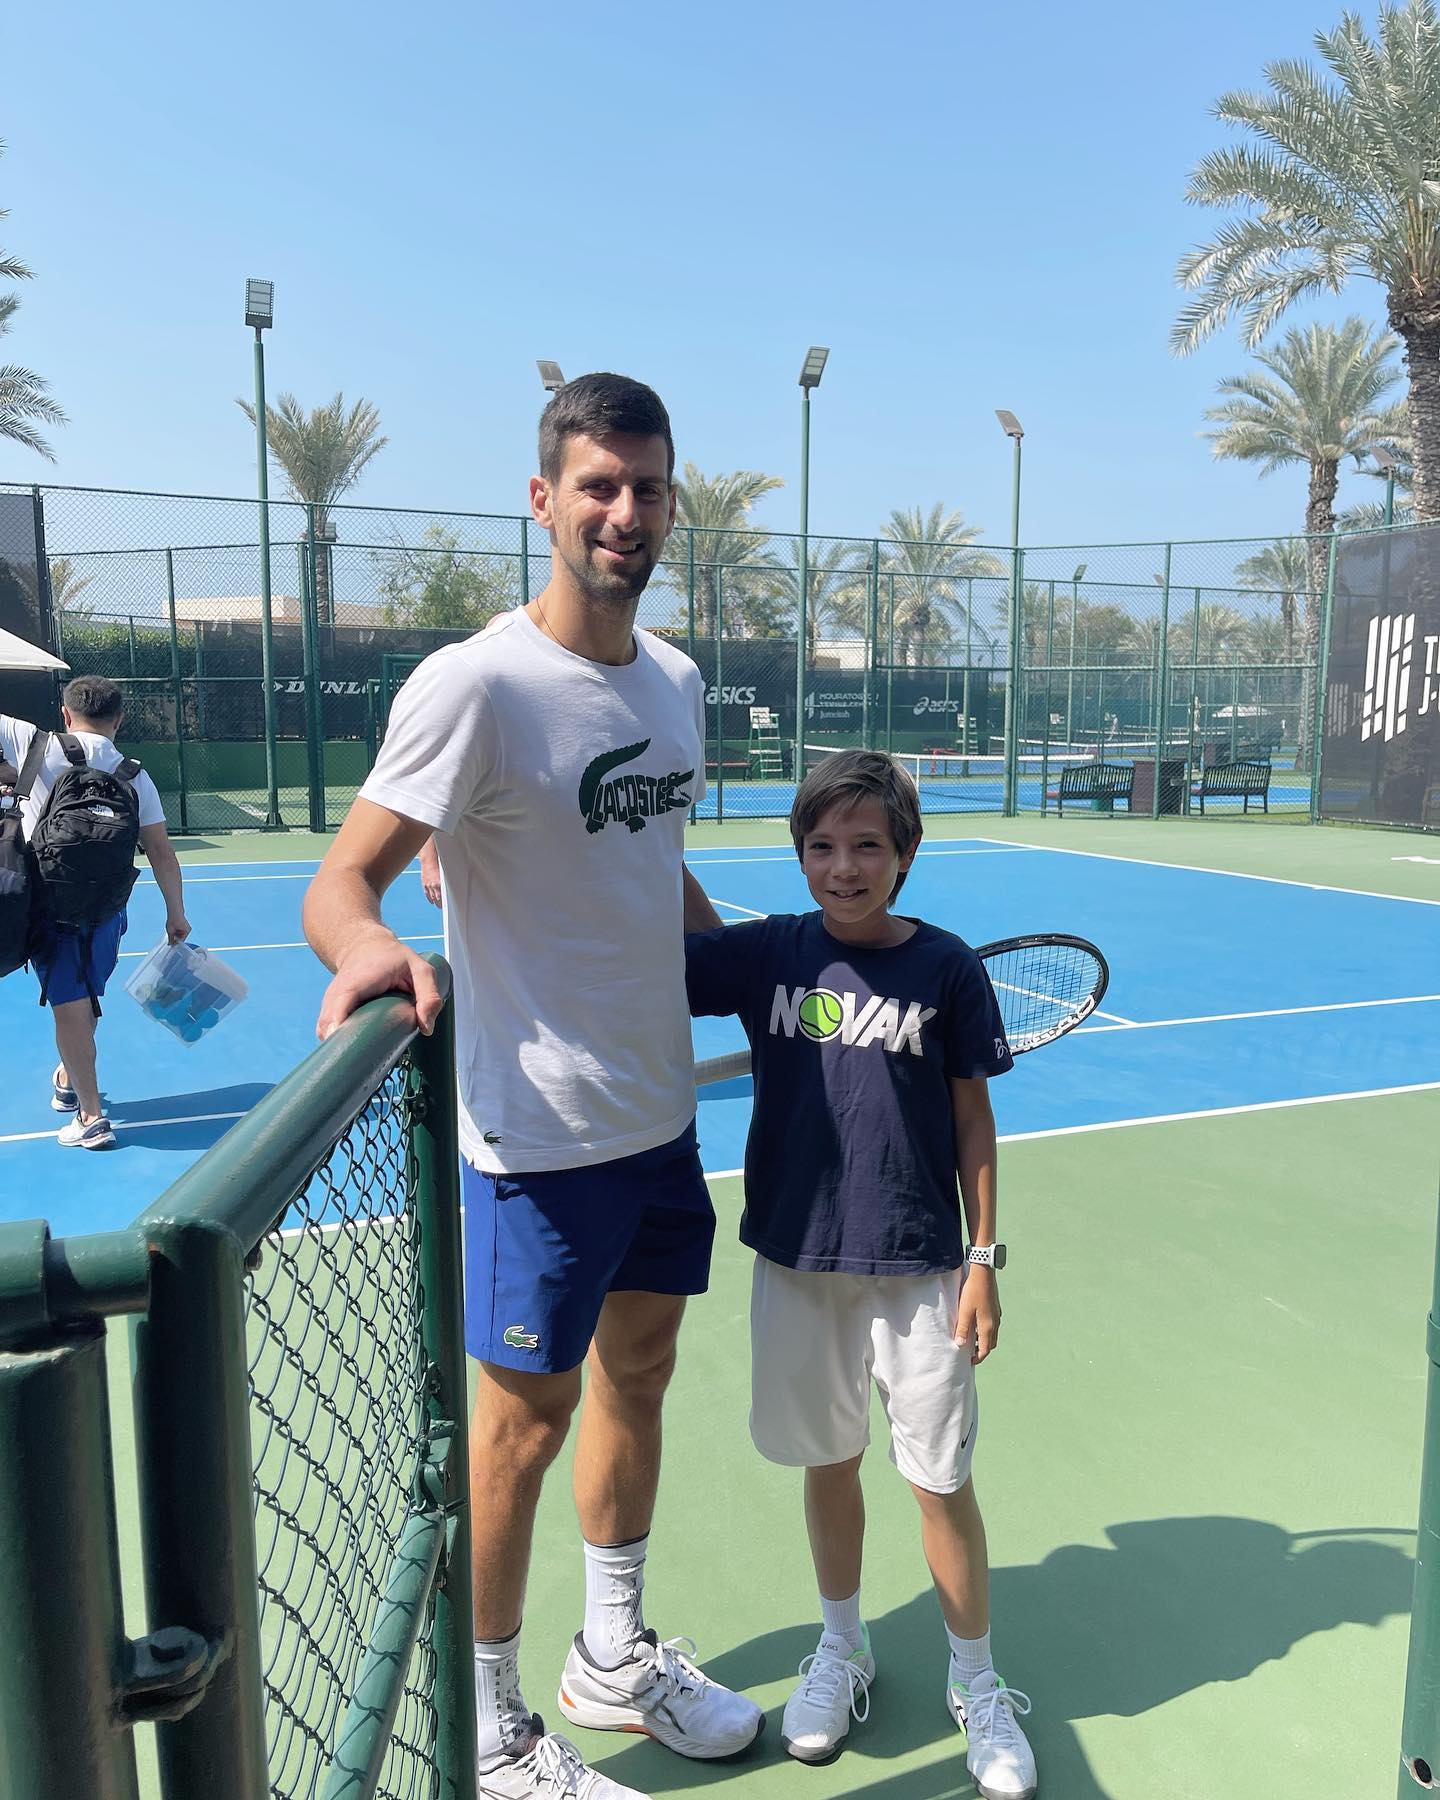 \ SportsCenter على تويتر: "El joven austríaco Johnny Roth (12 años) compartió el entrenamiento de Novak Djokovic en Dubai, y se un regalo. https://t.co/NHhvCQjBvD"